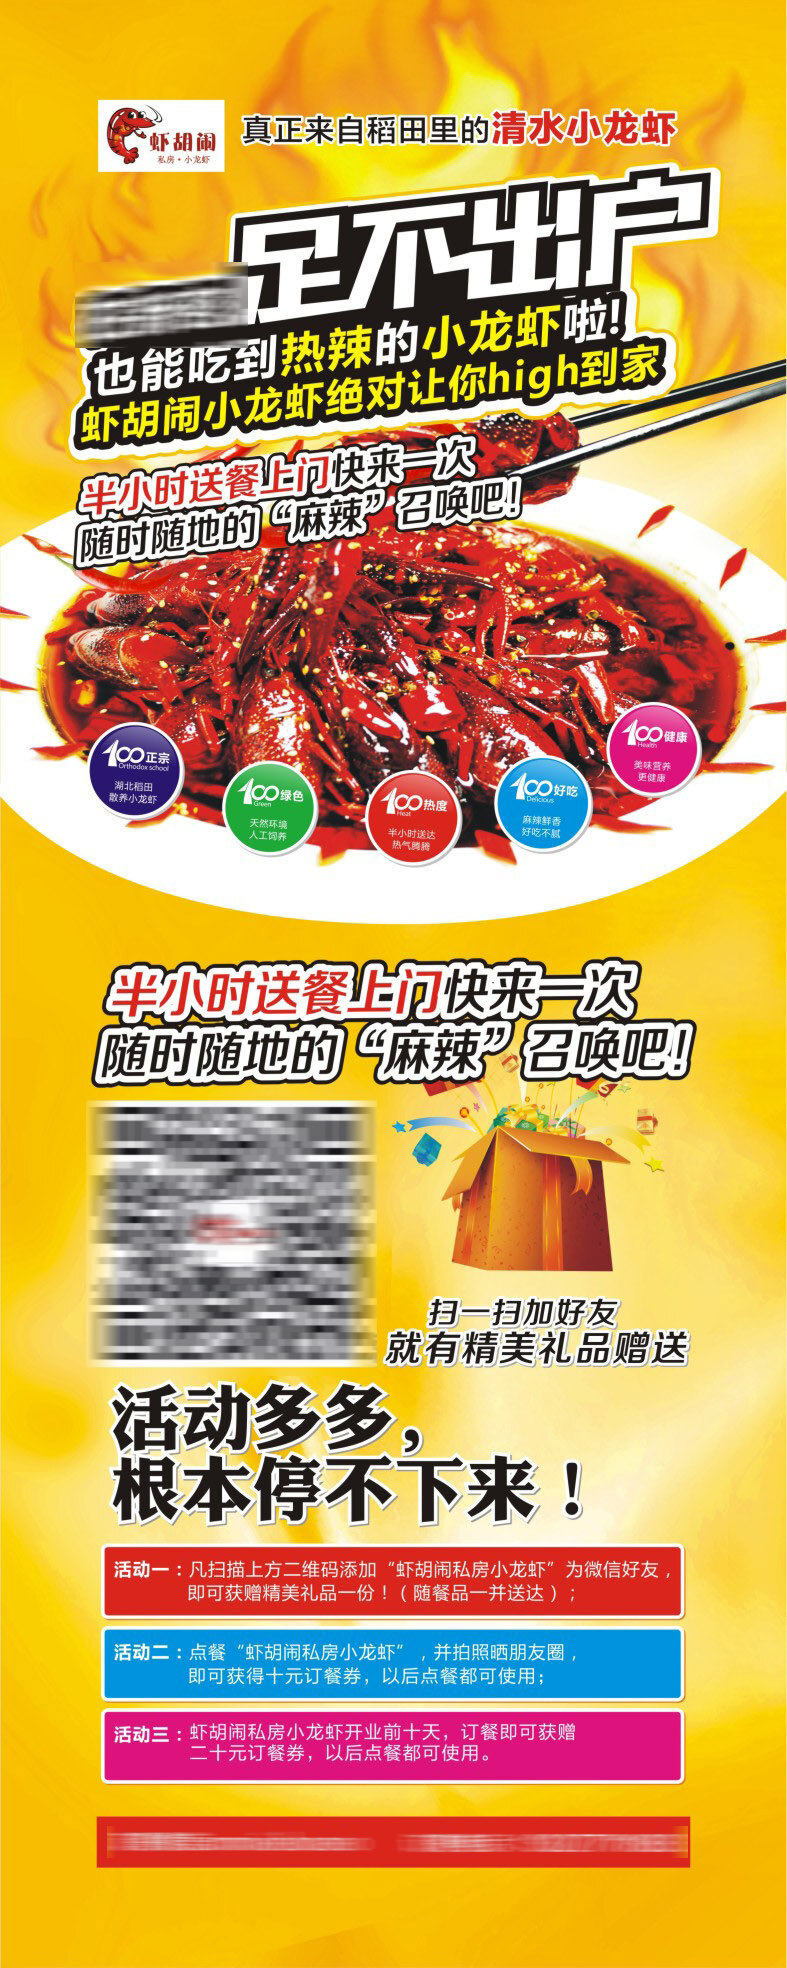 热火 小 龙虾 宣传 小龙虾 清水小龙虾 吃 龙虾宣传